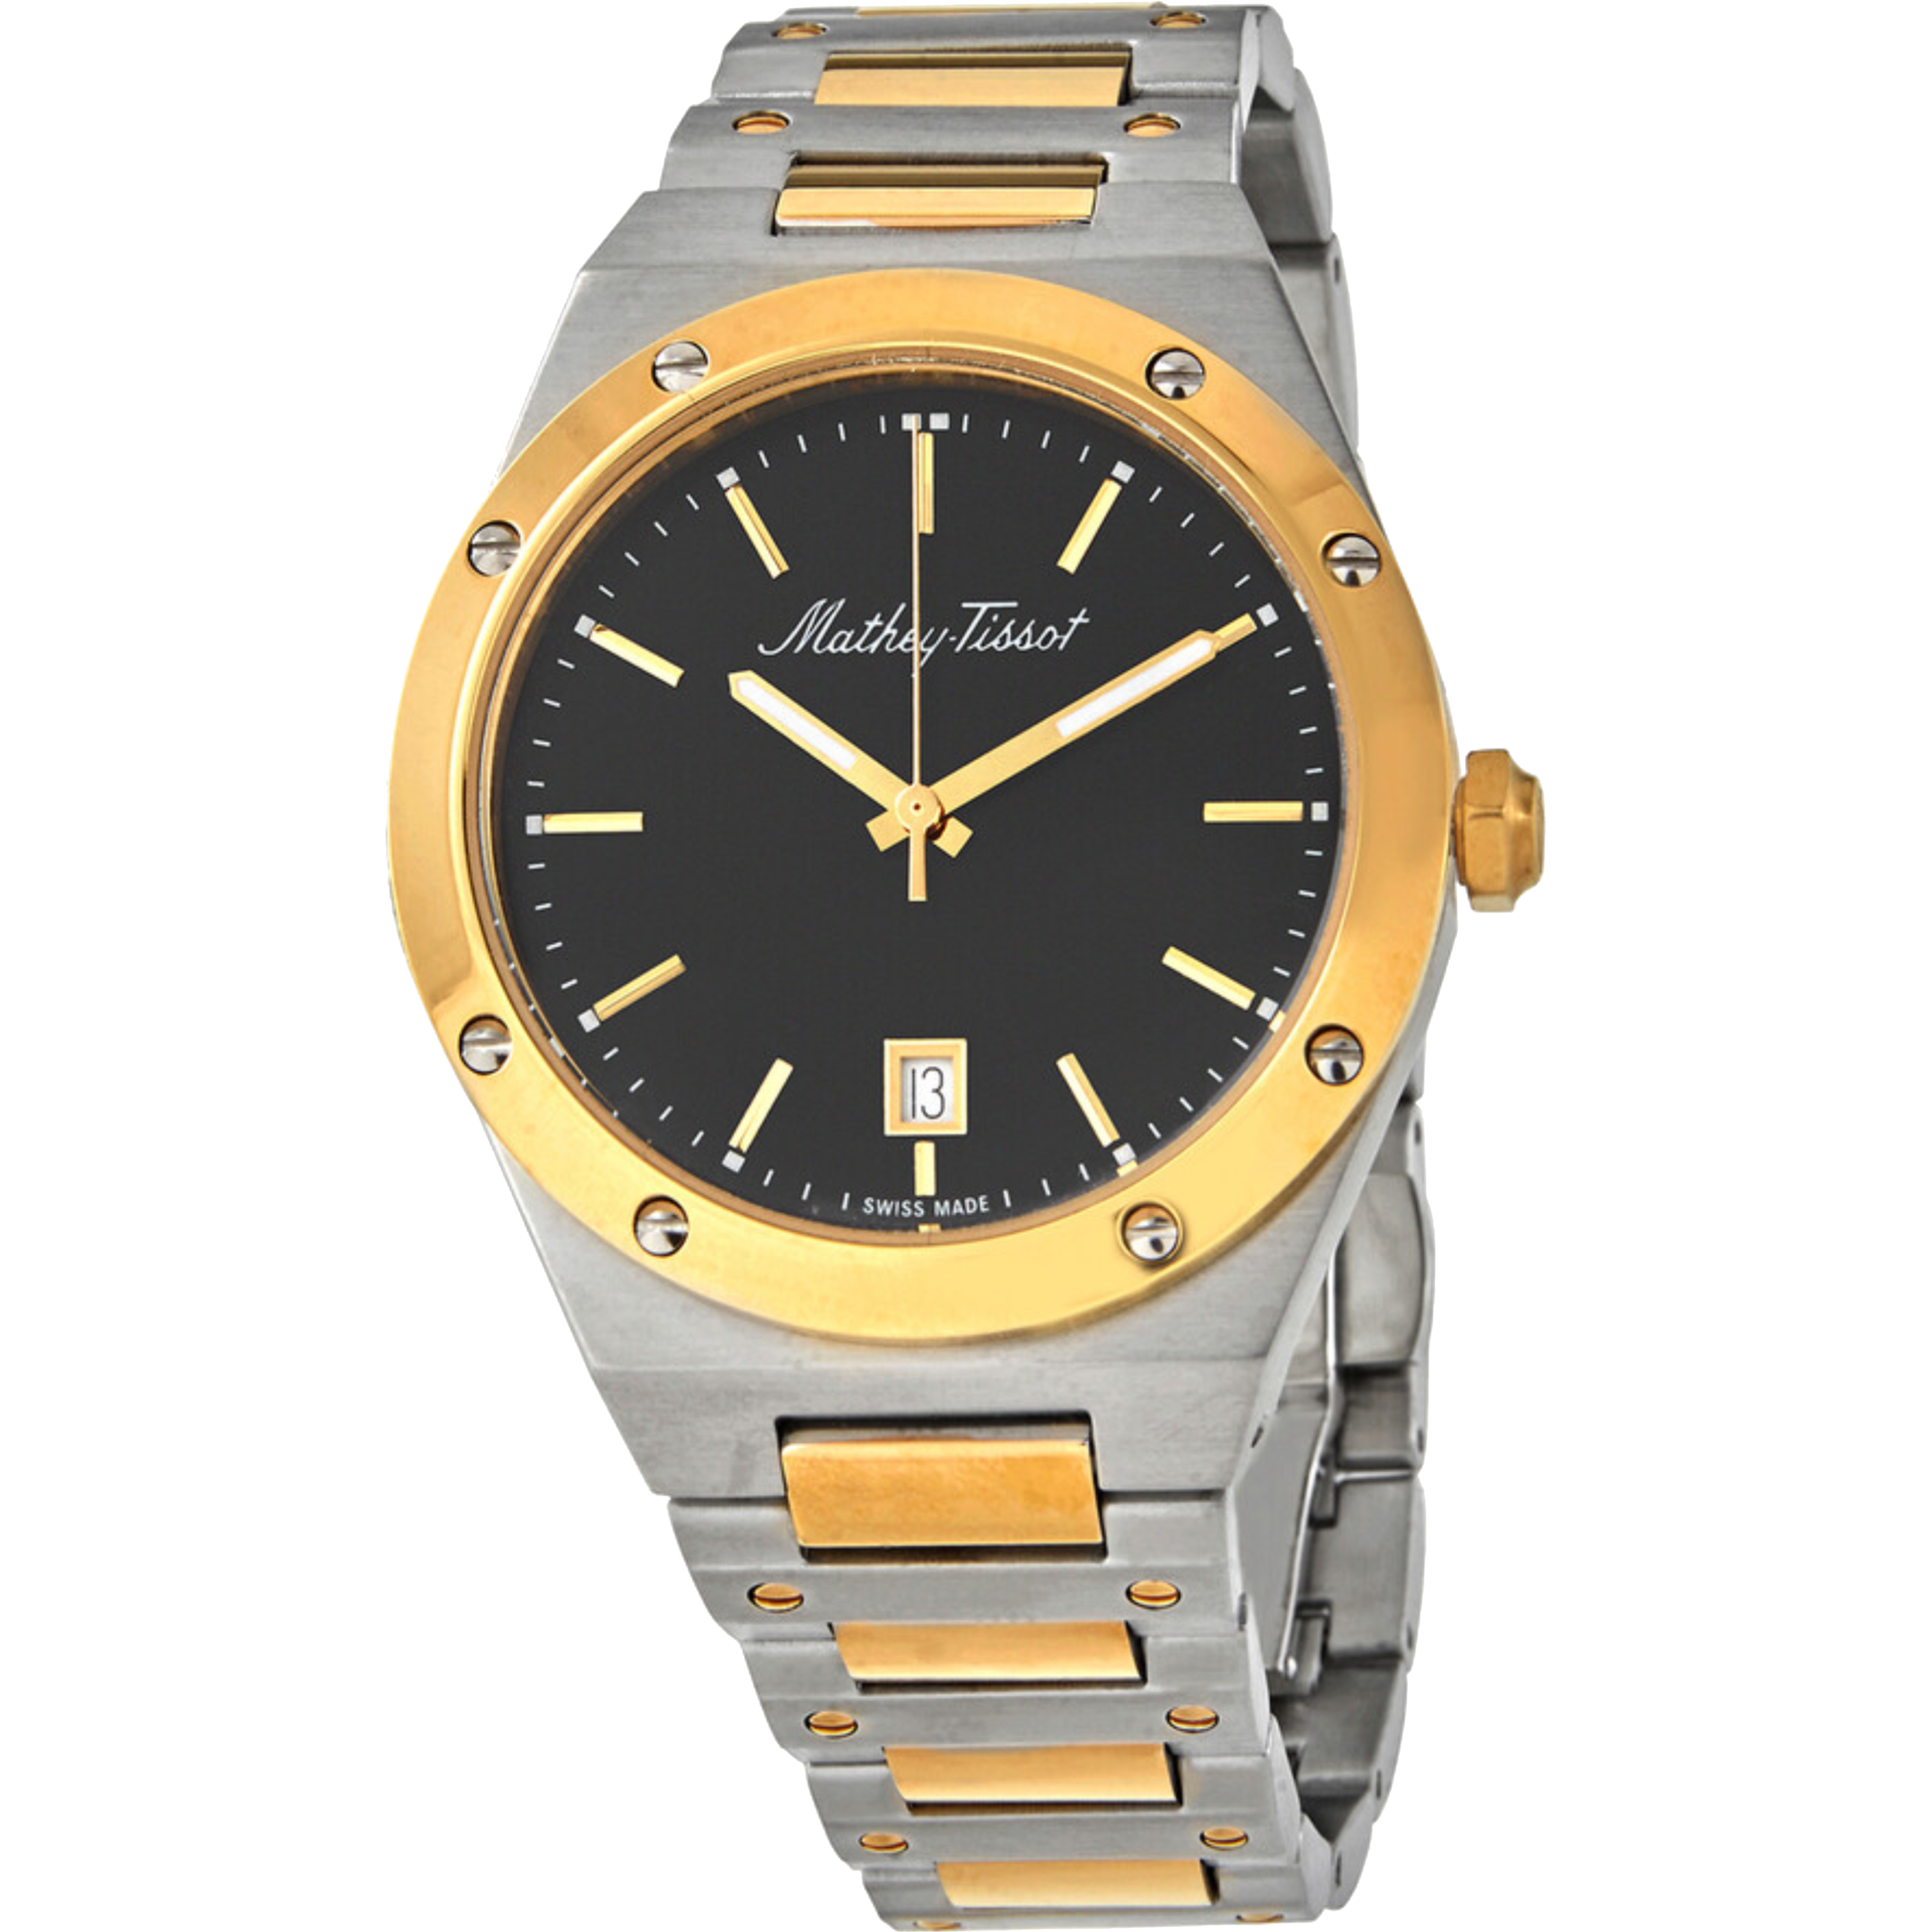 שעון יד לגבר Mathey Tissot H680BN 41mm צבע כסף/זהב/שחור/זכוכית ספיר - אחריות לשנתיים